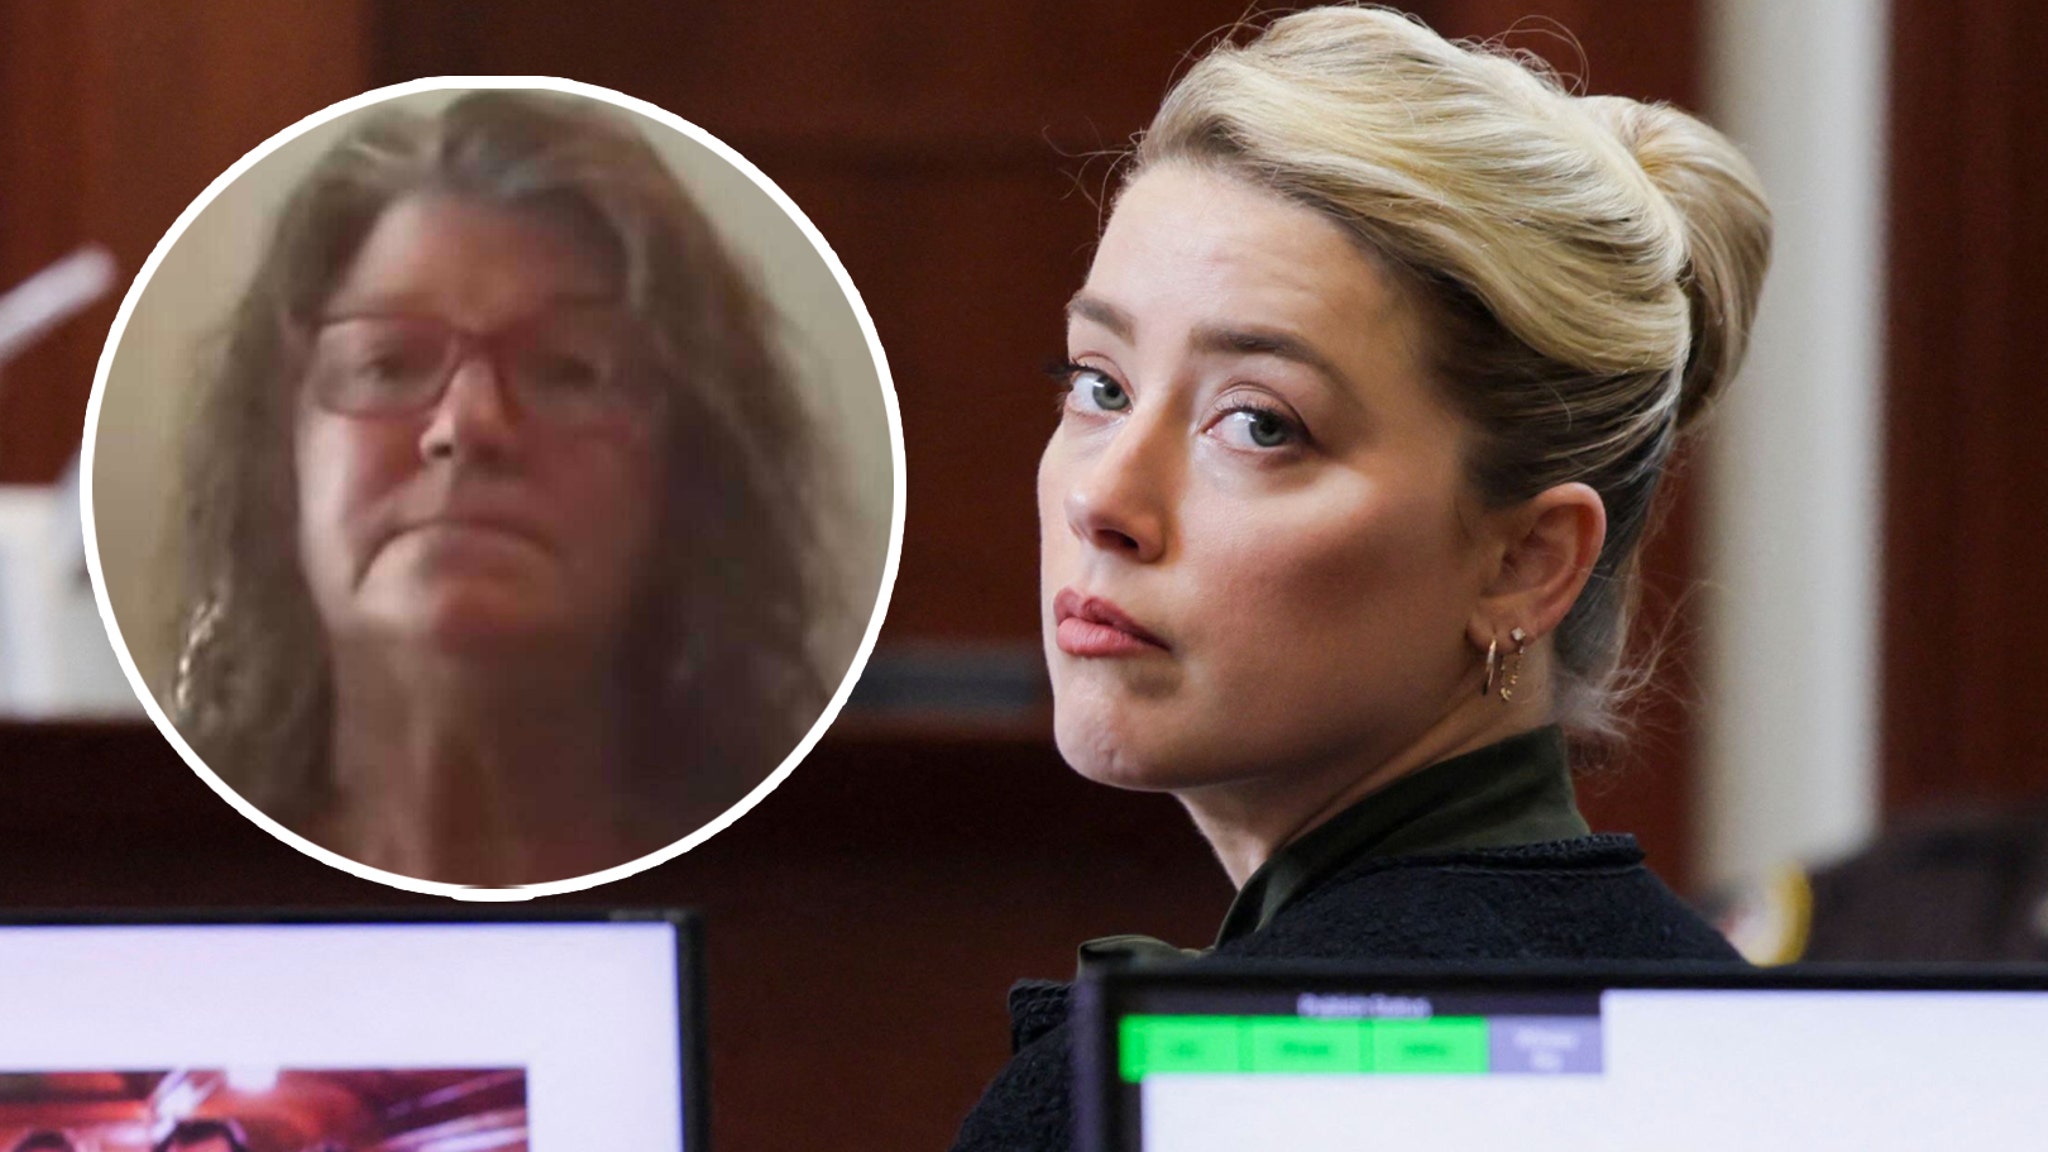 La empleada del aeropuerto Amber Heard testifica para luchar contra la compañera de viaje